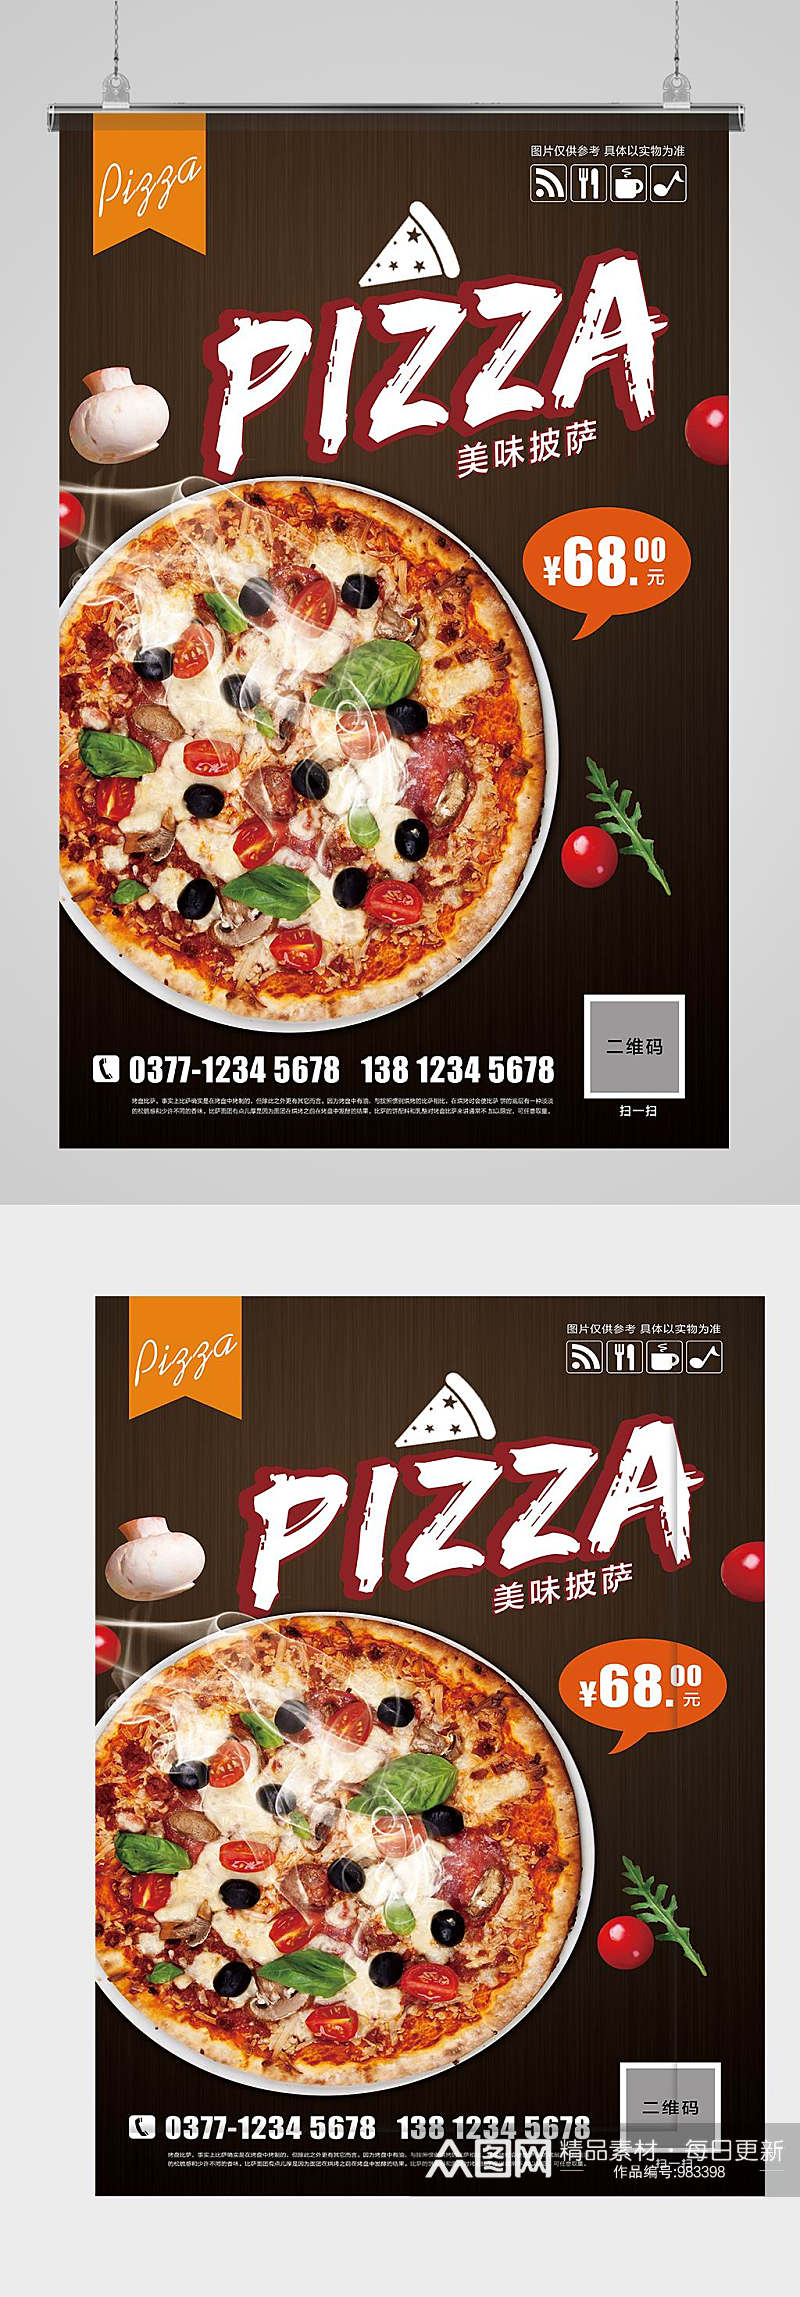 披萨宣传海报设计素材